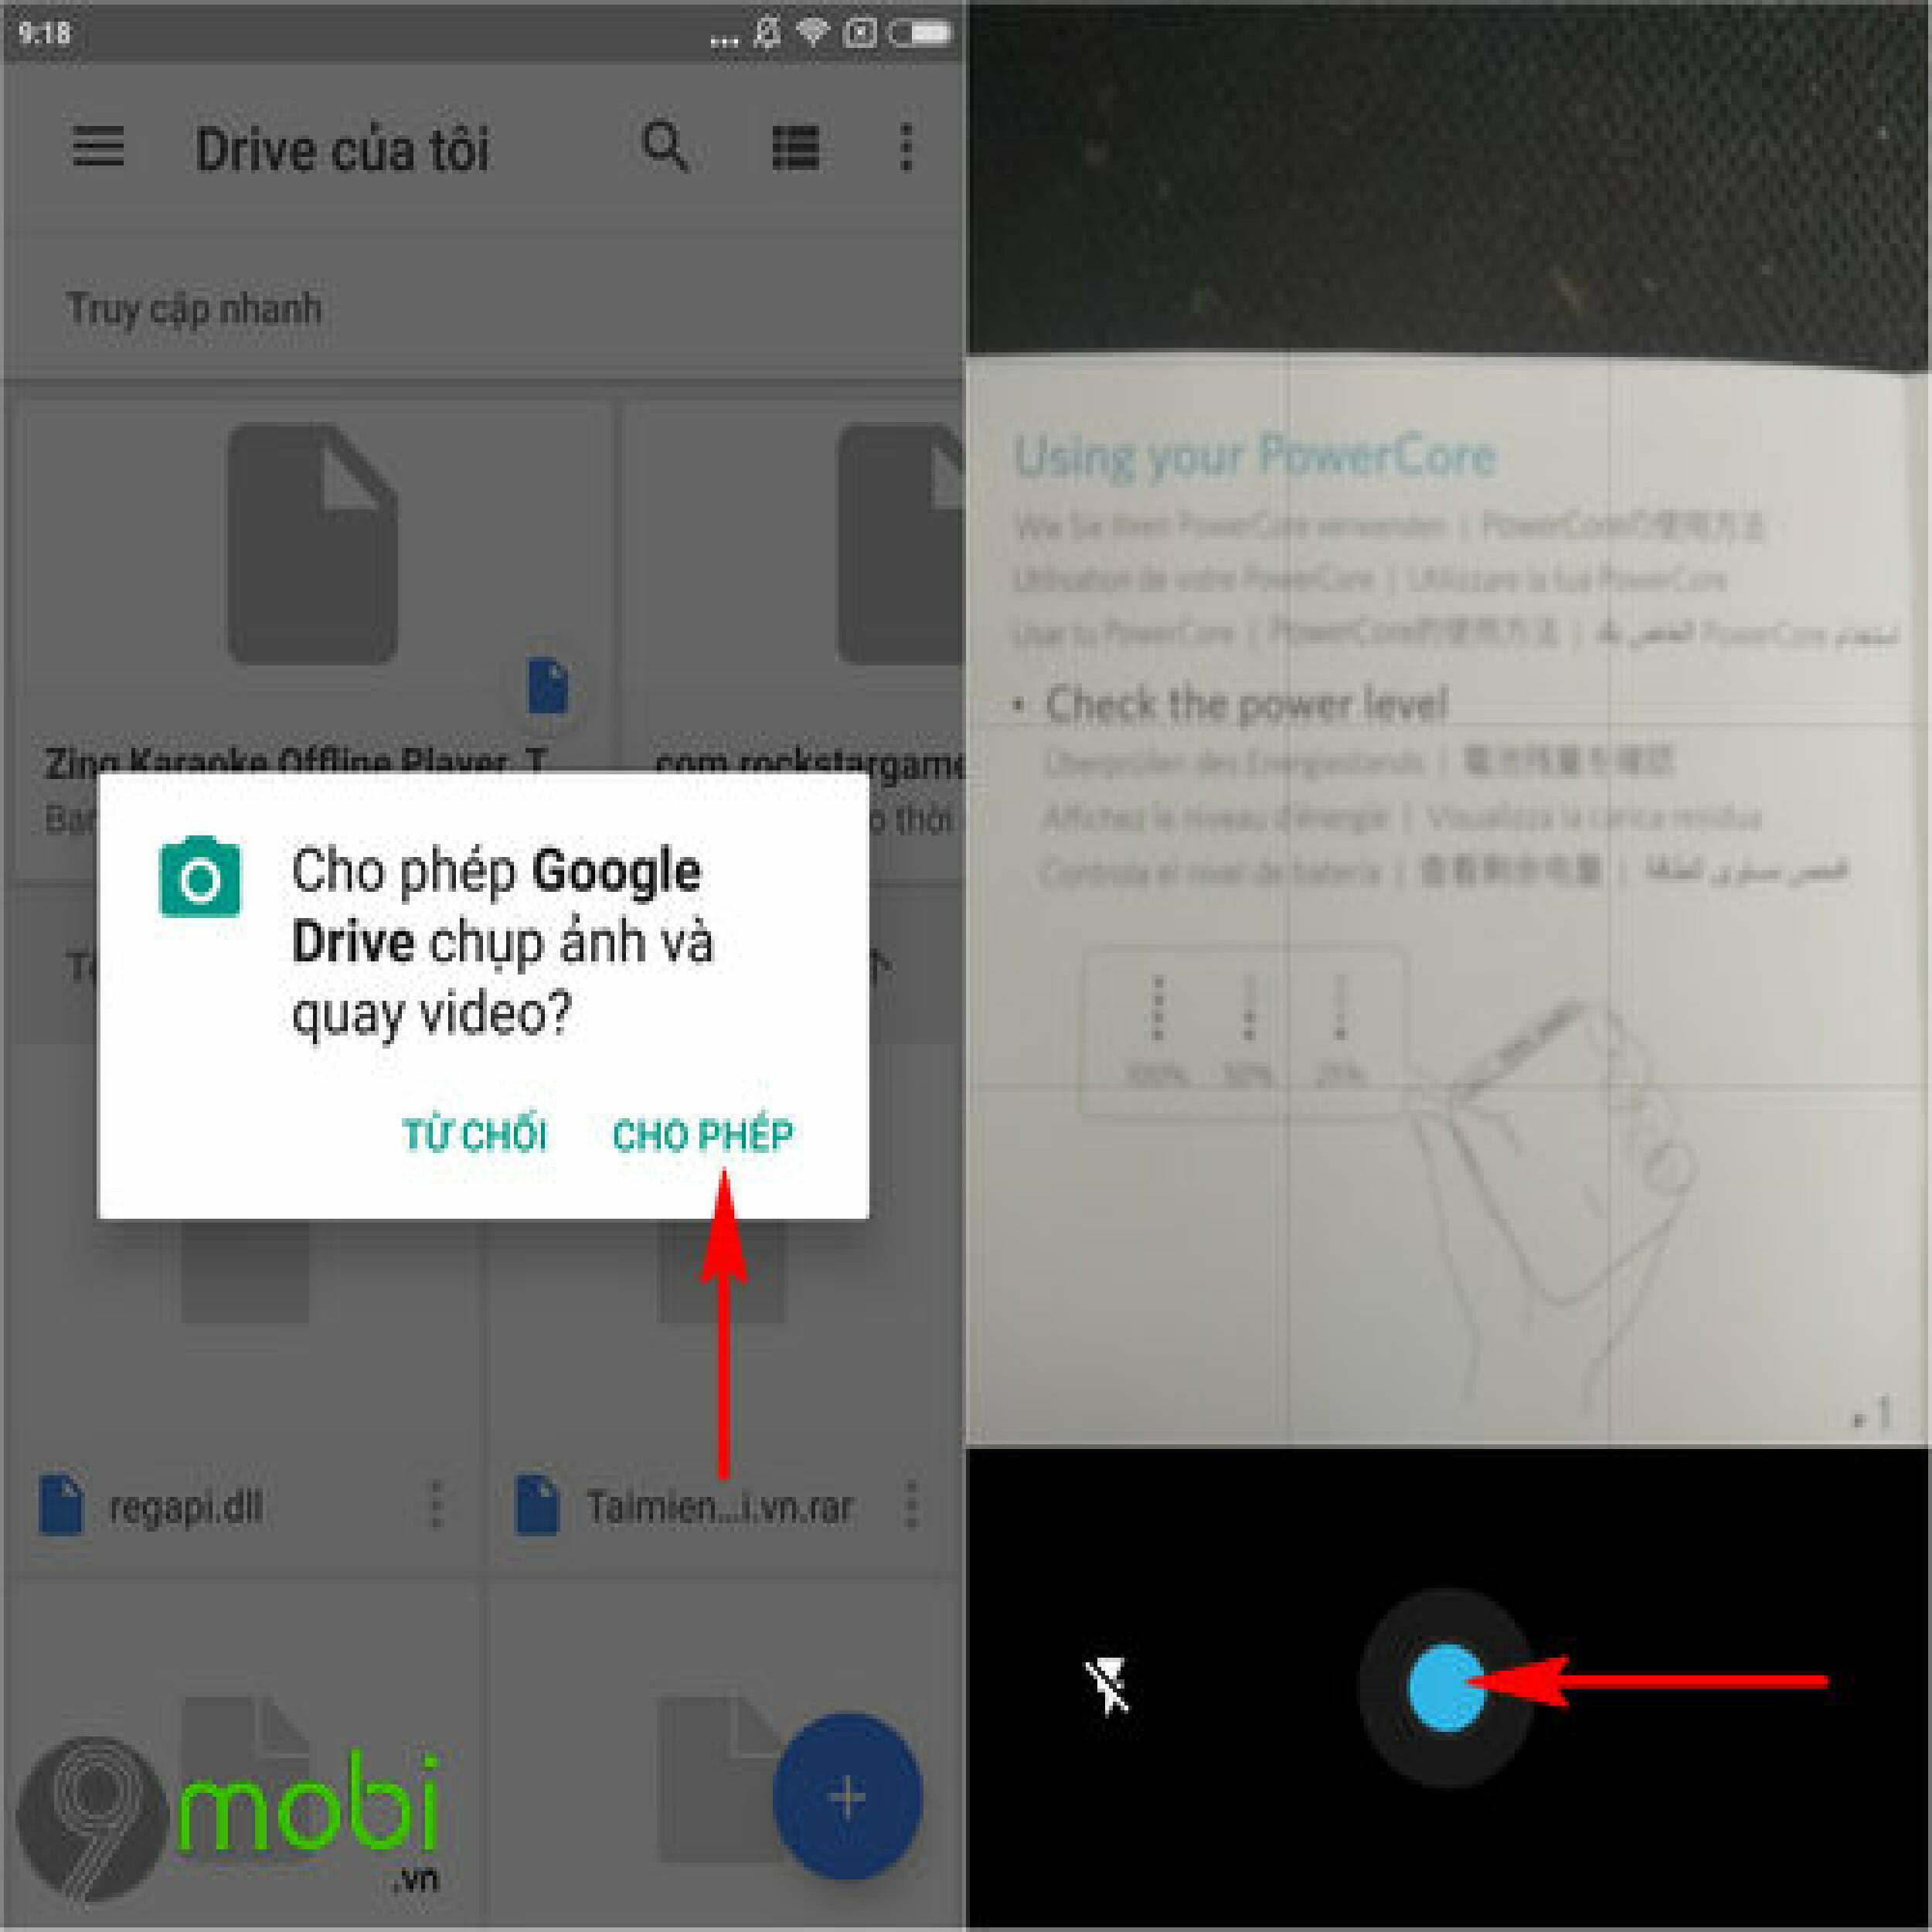 Cách scan ảnh bằng điện thoại Iphone